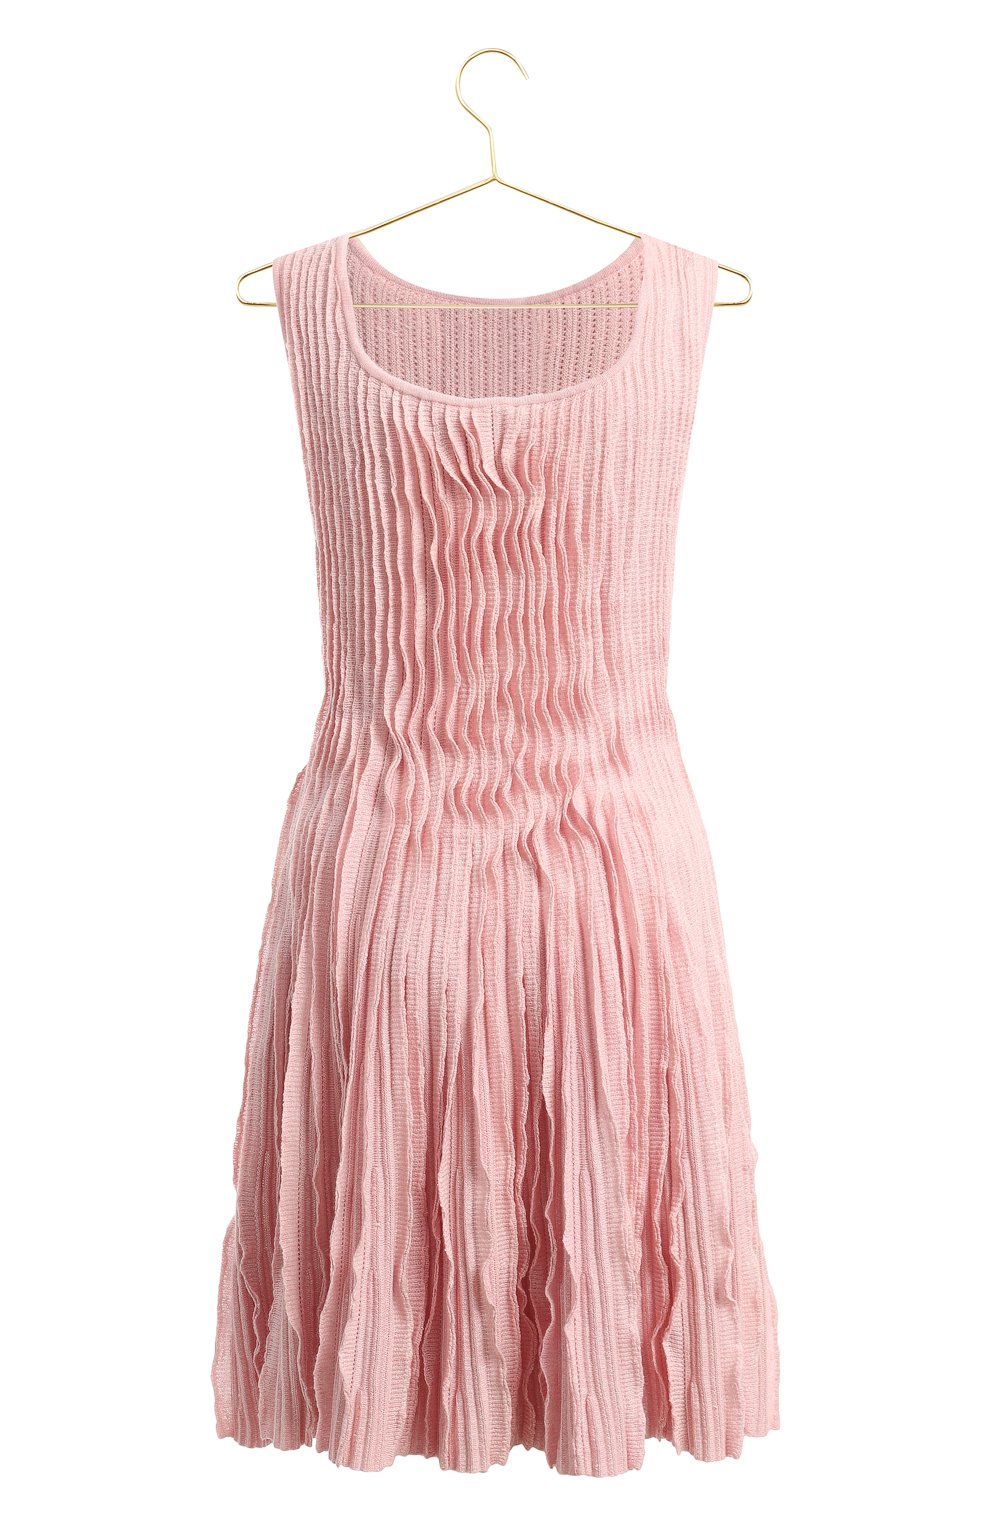 Платье из кашемира и льна | Chanel | Розовый - 2